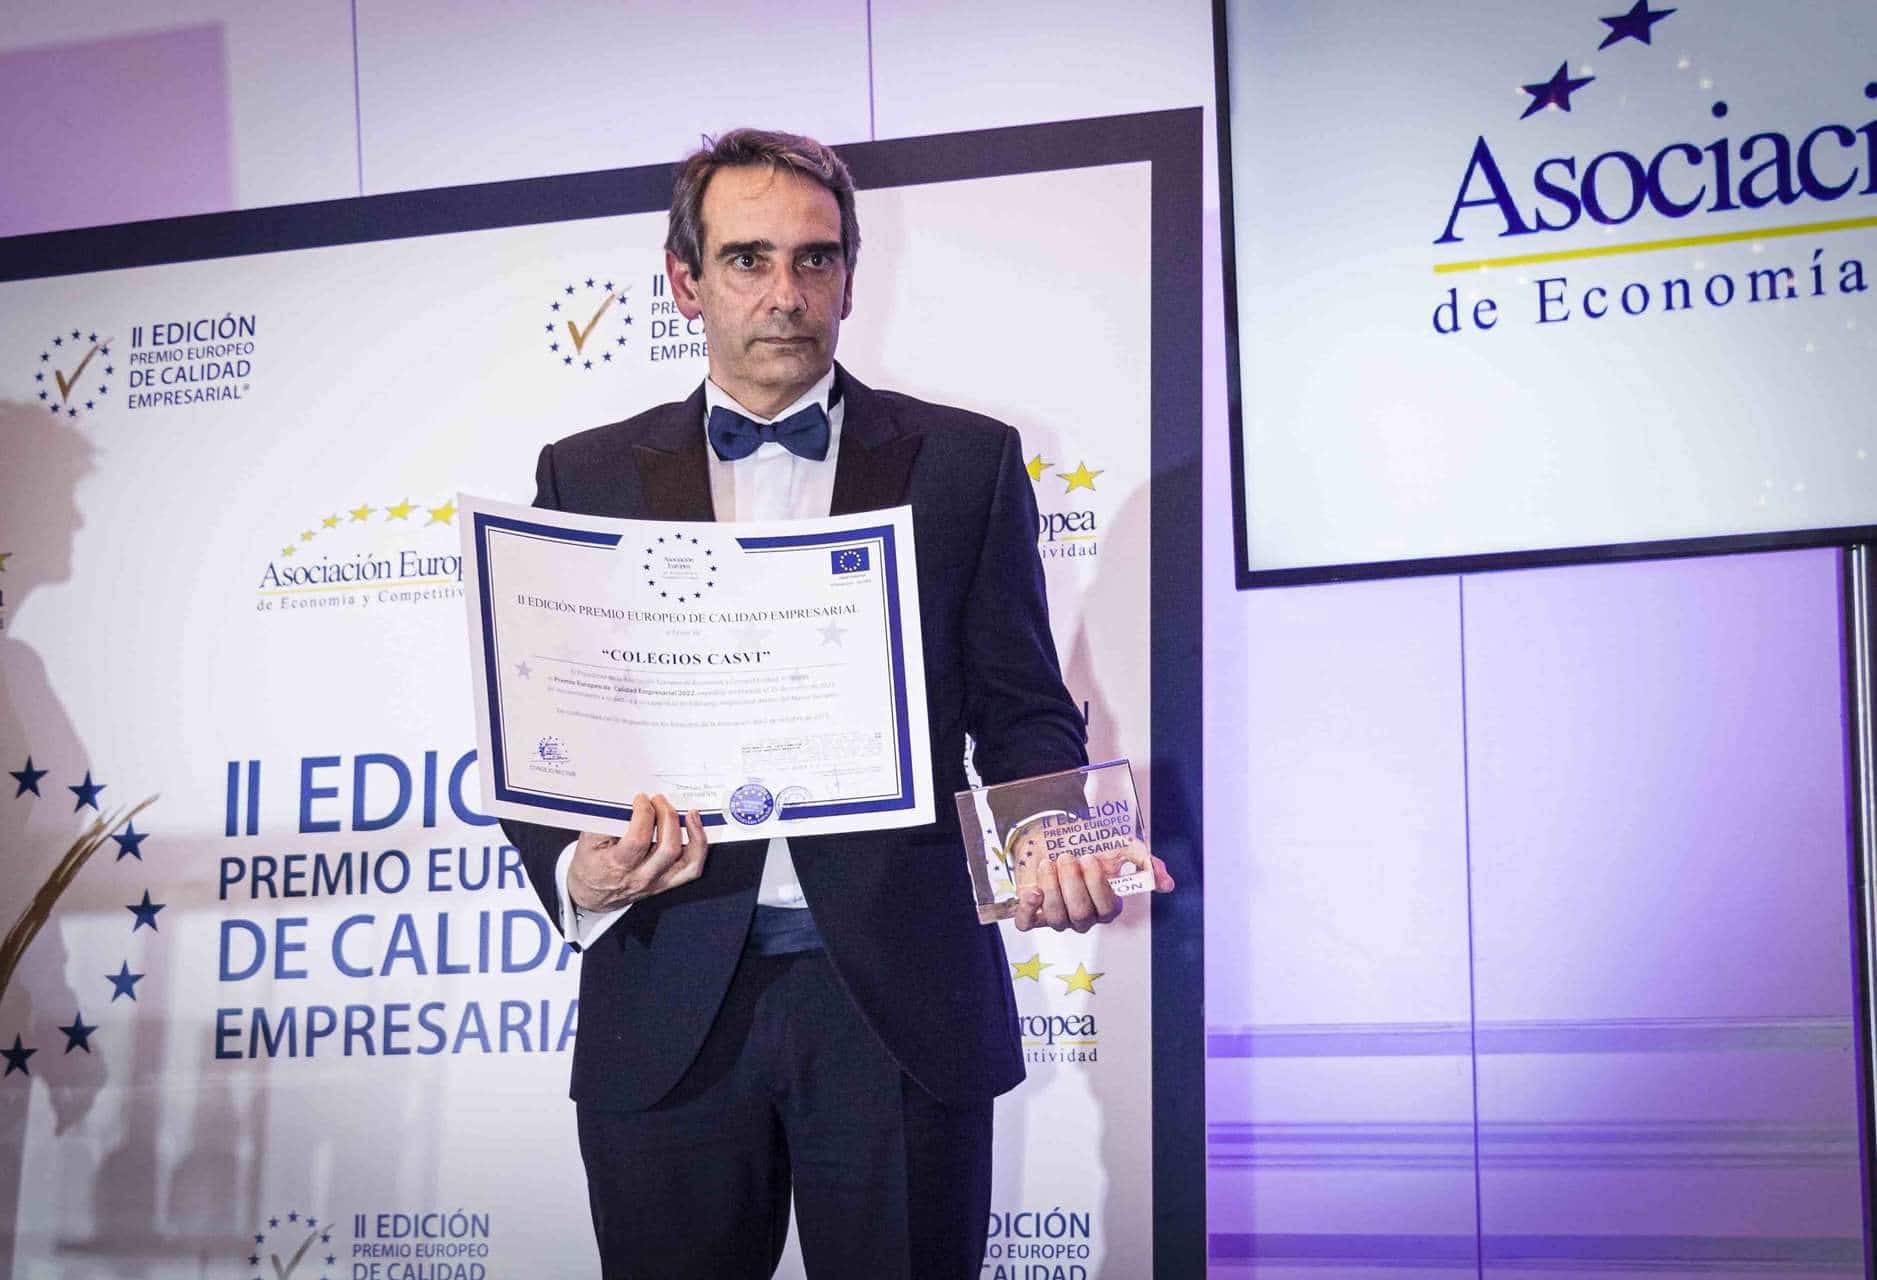 Juan Luis Yagüe posa tras recoger el premio Europeo a Casvi por la calidad empresarial